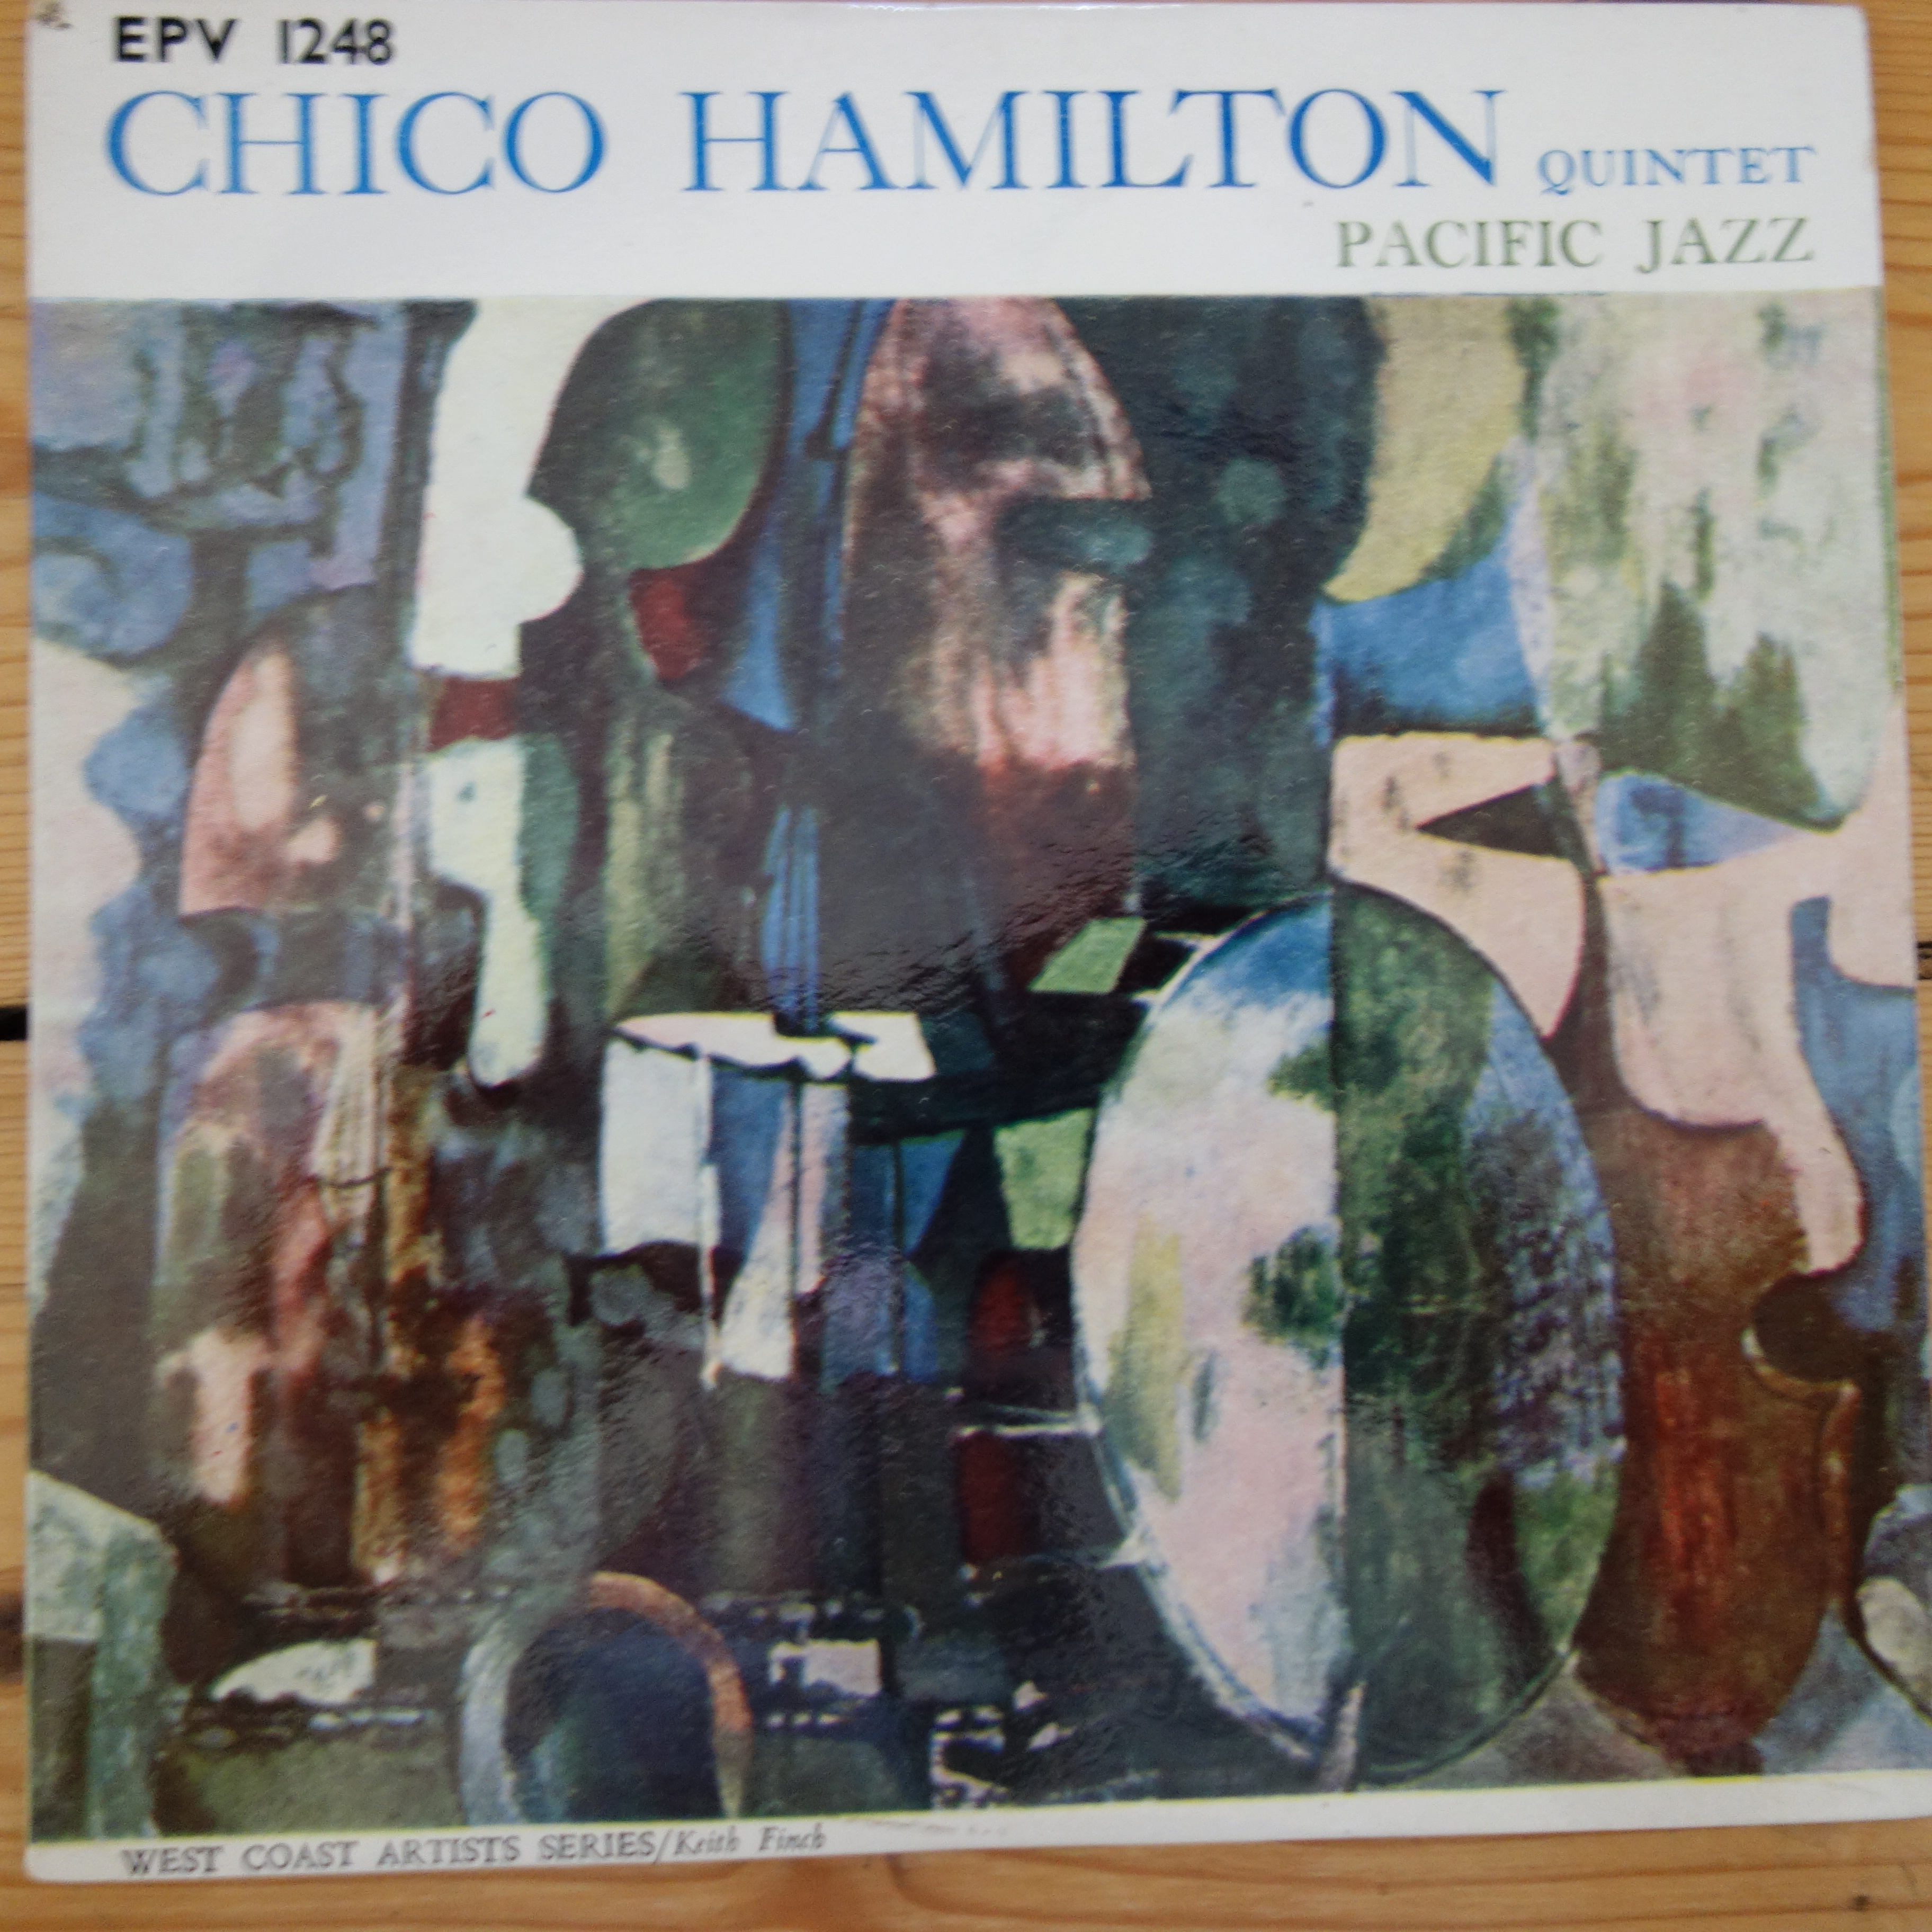 EPV 1248 Chico Hamilton Quartet